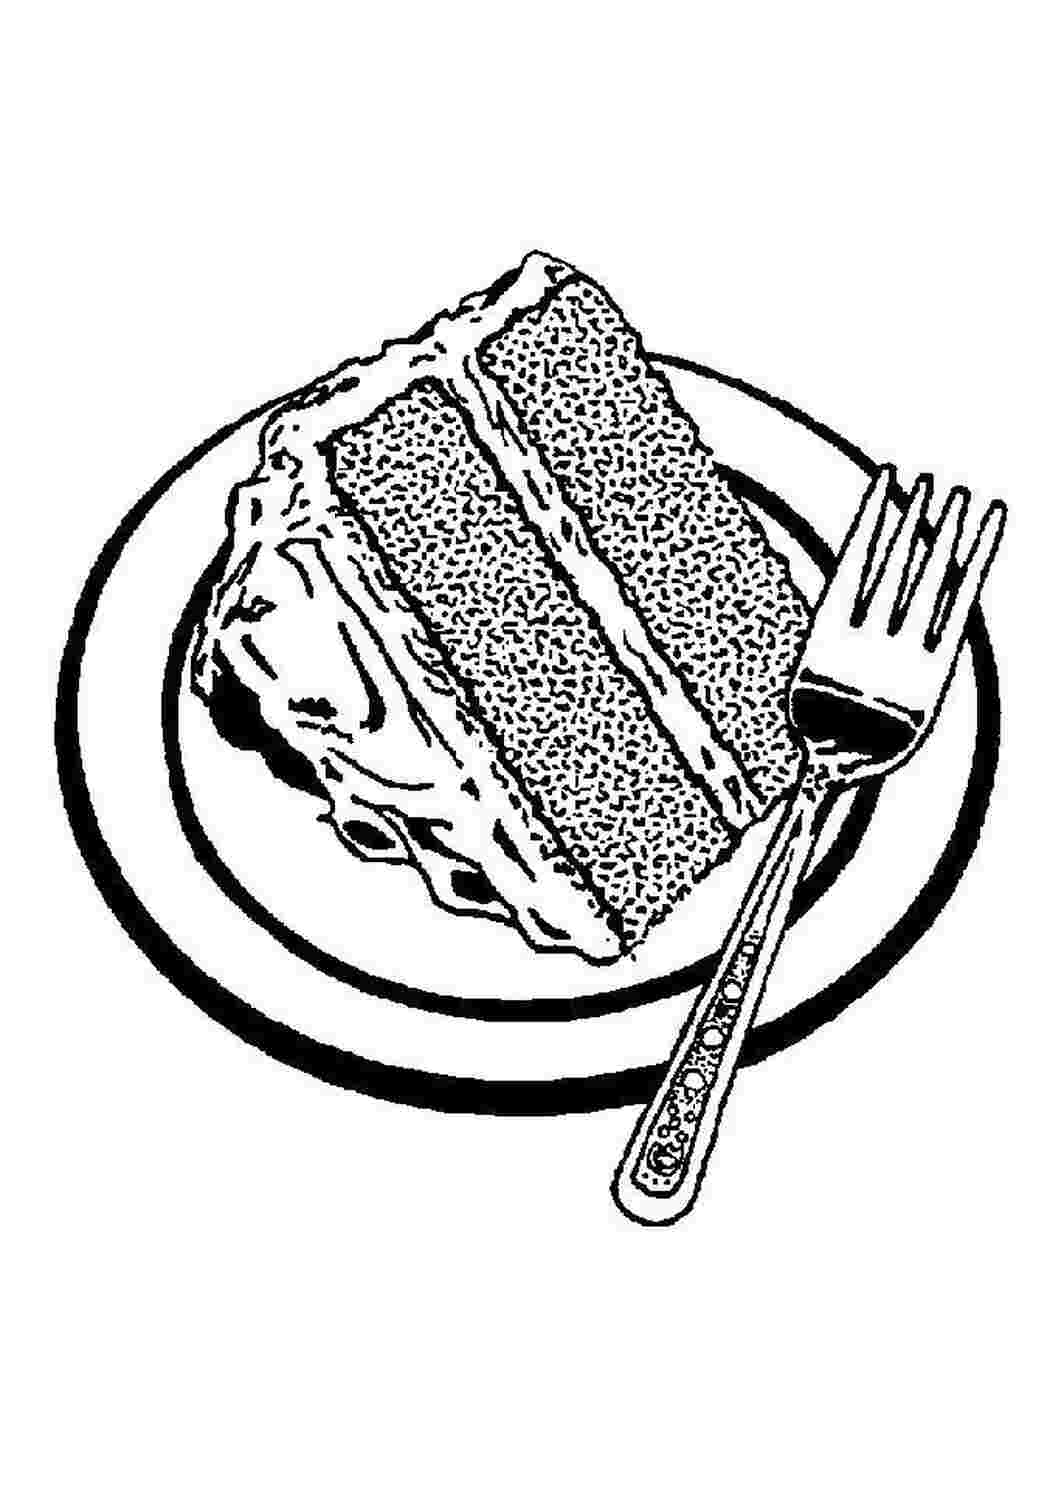 Кусок торта на тарелке рисунок. Тортик. Раскраска. Раскраска тортик кусочек. Раскраска торт. Раскраска пироги.